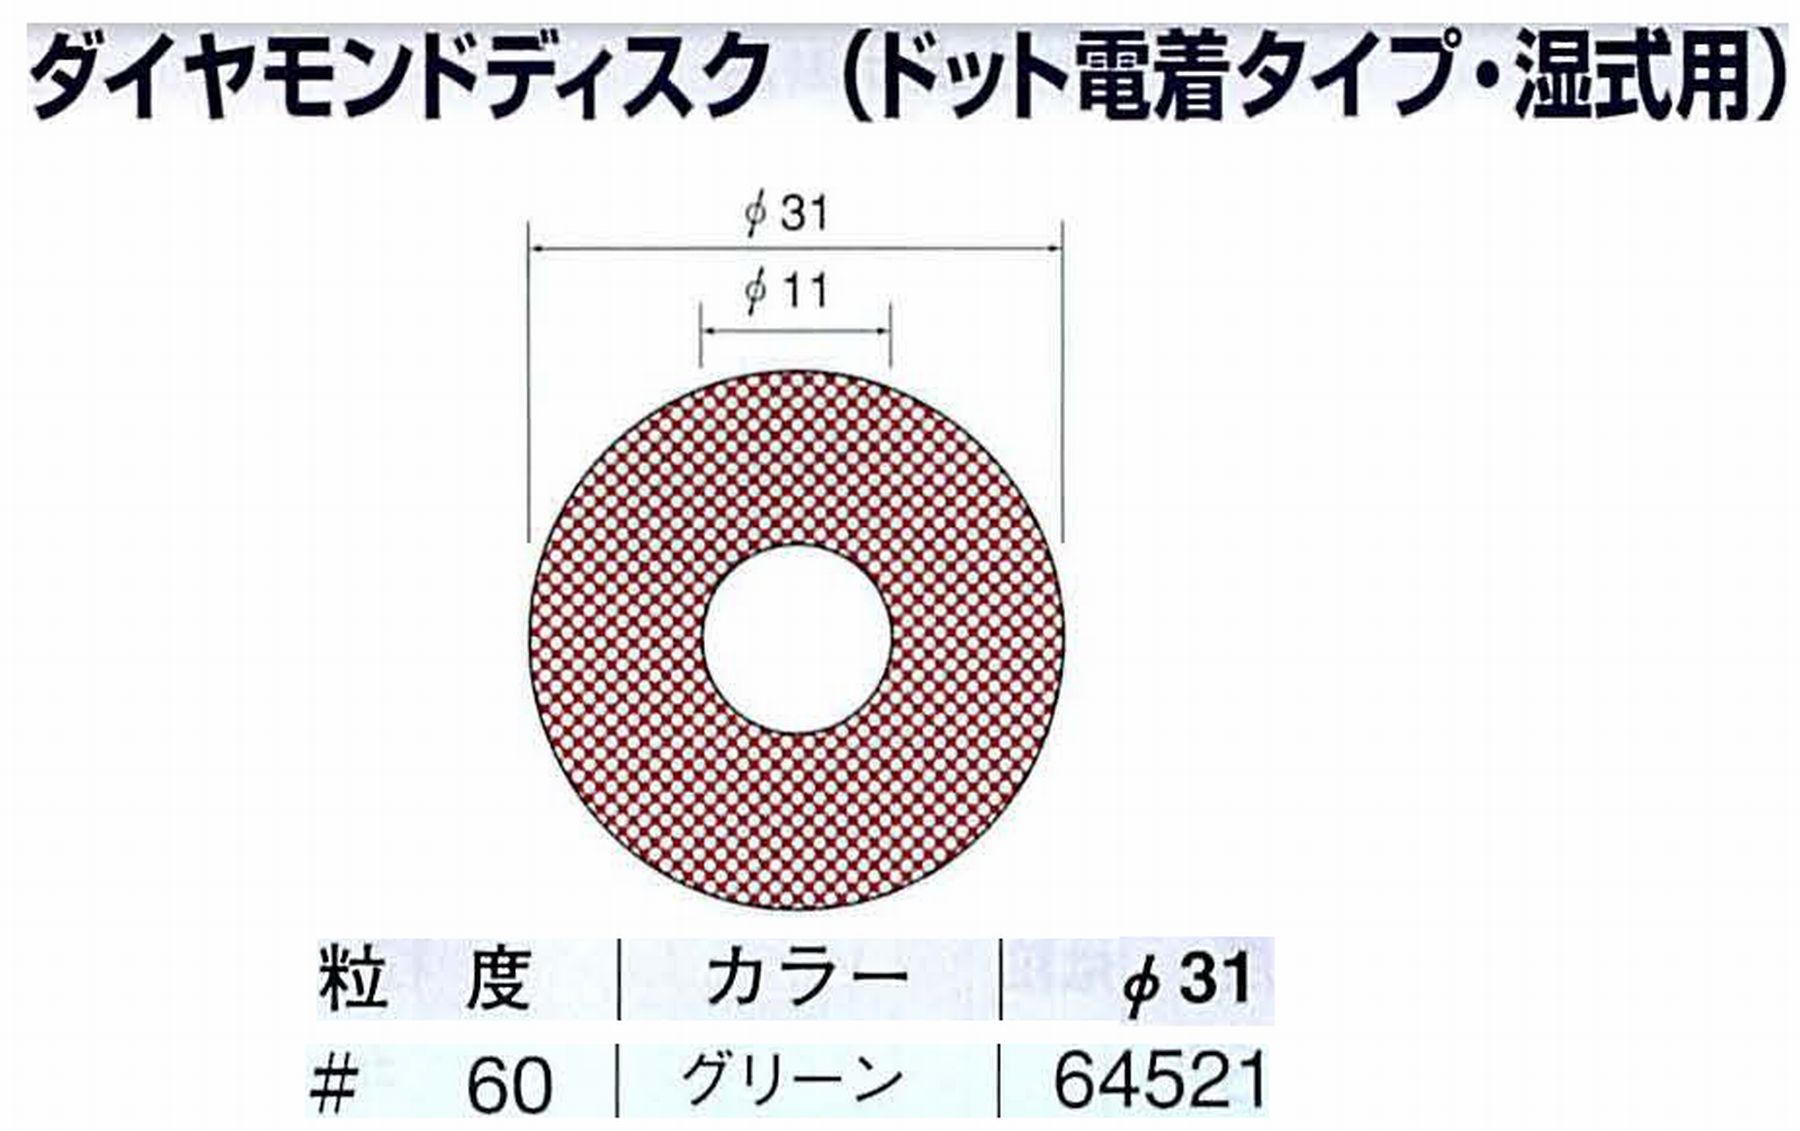 ナカニシ/NAKANISHI アングルグラインダ(電動・エアー) アングルアタッチメント専用工具 ダイヤモンドディスク(ドット電着タイプ・湿式用) 64521